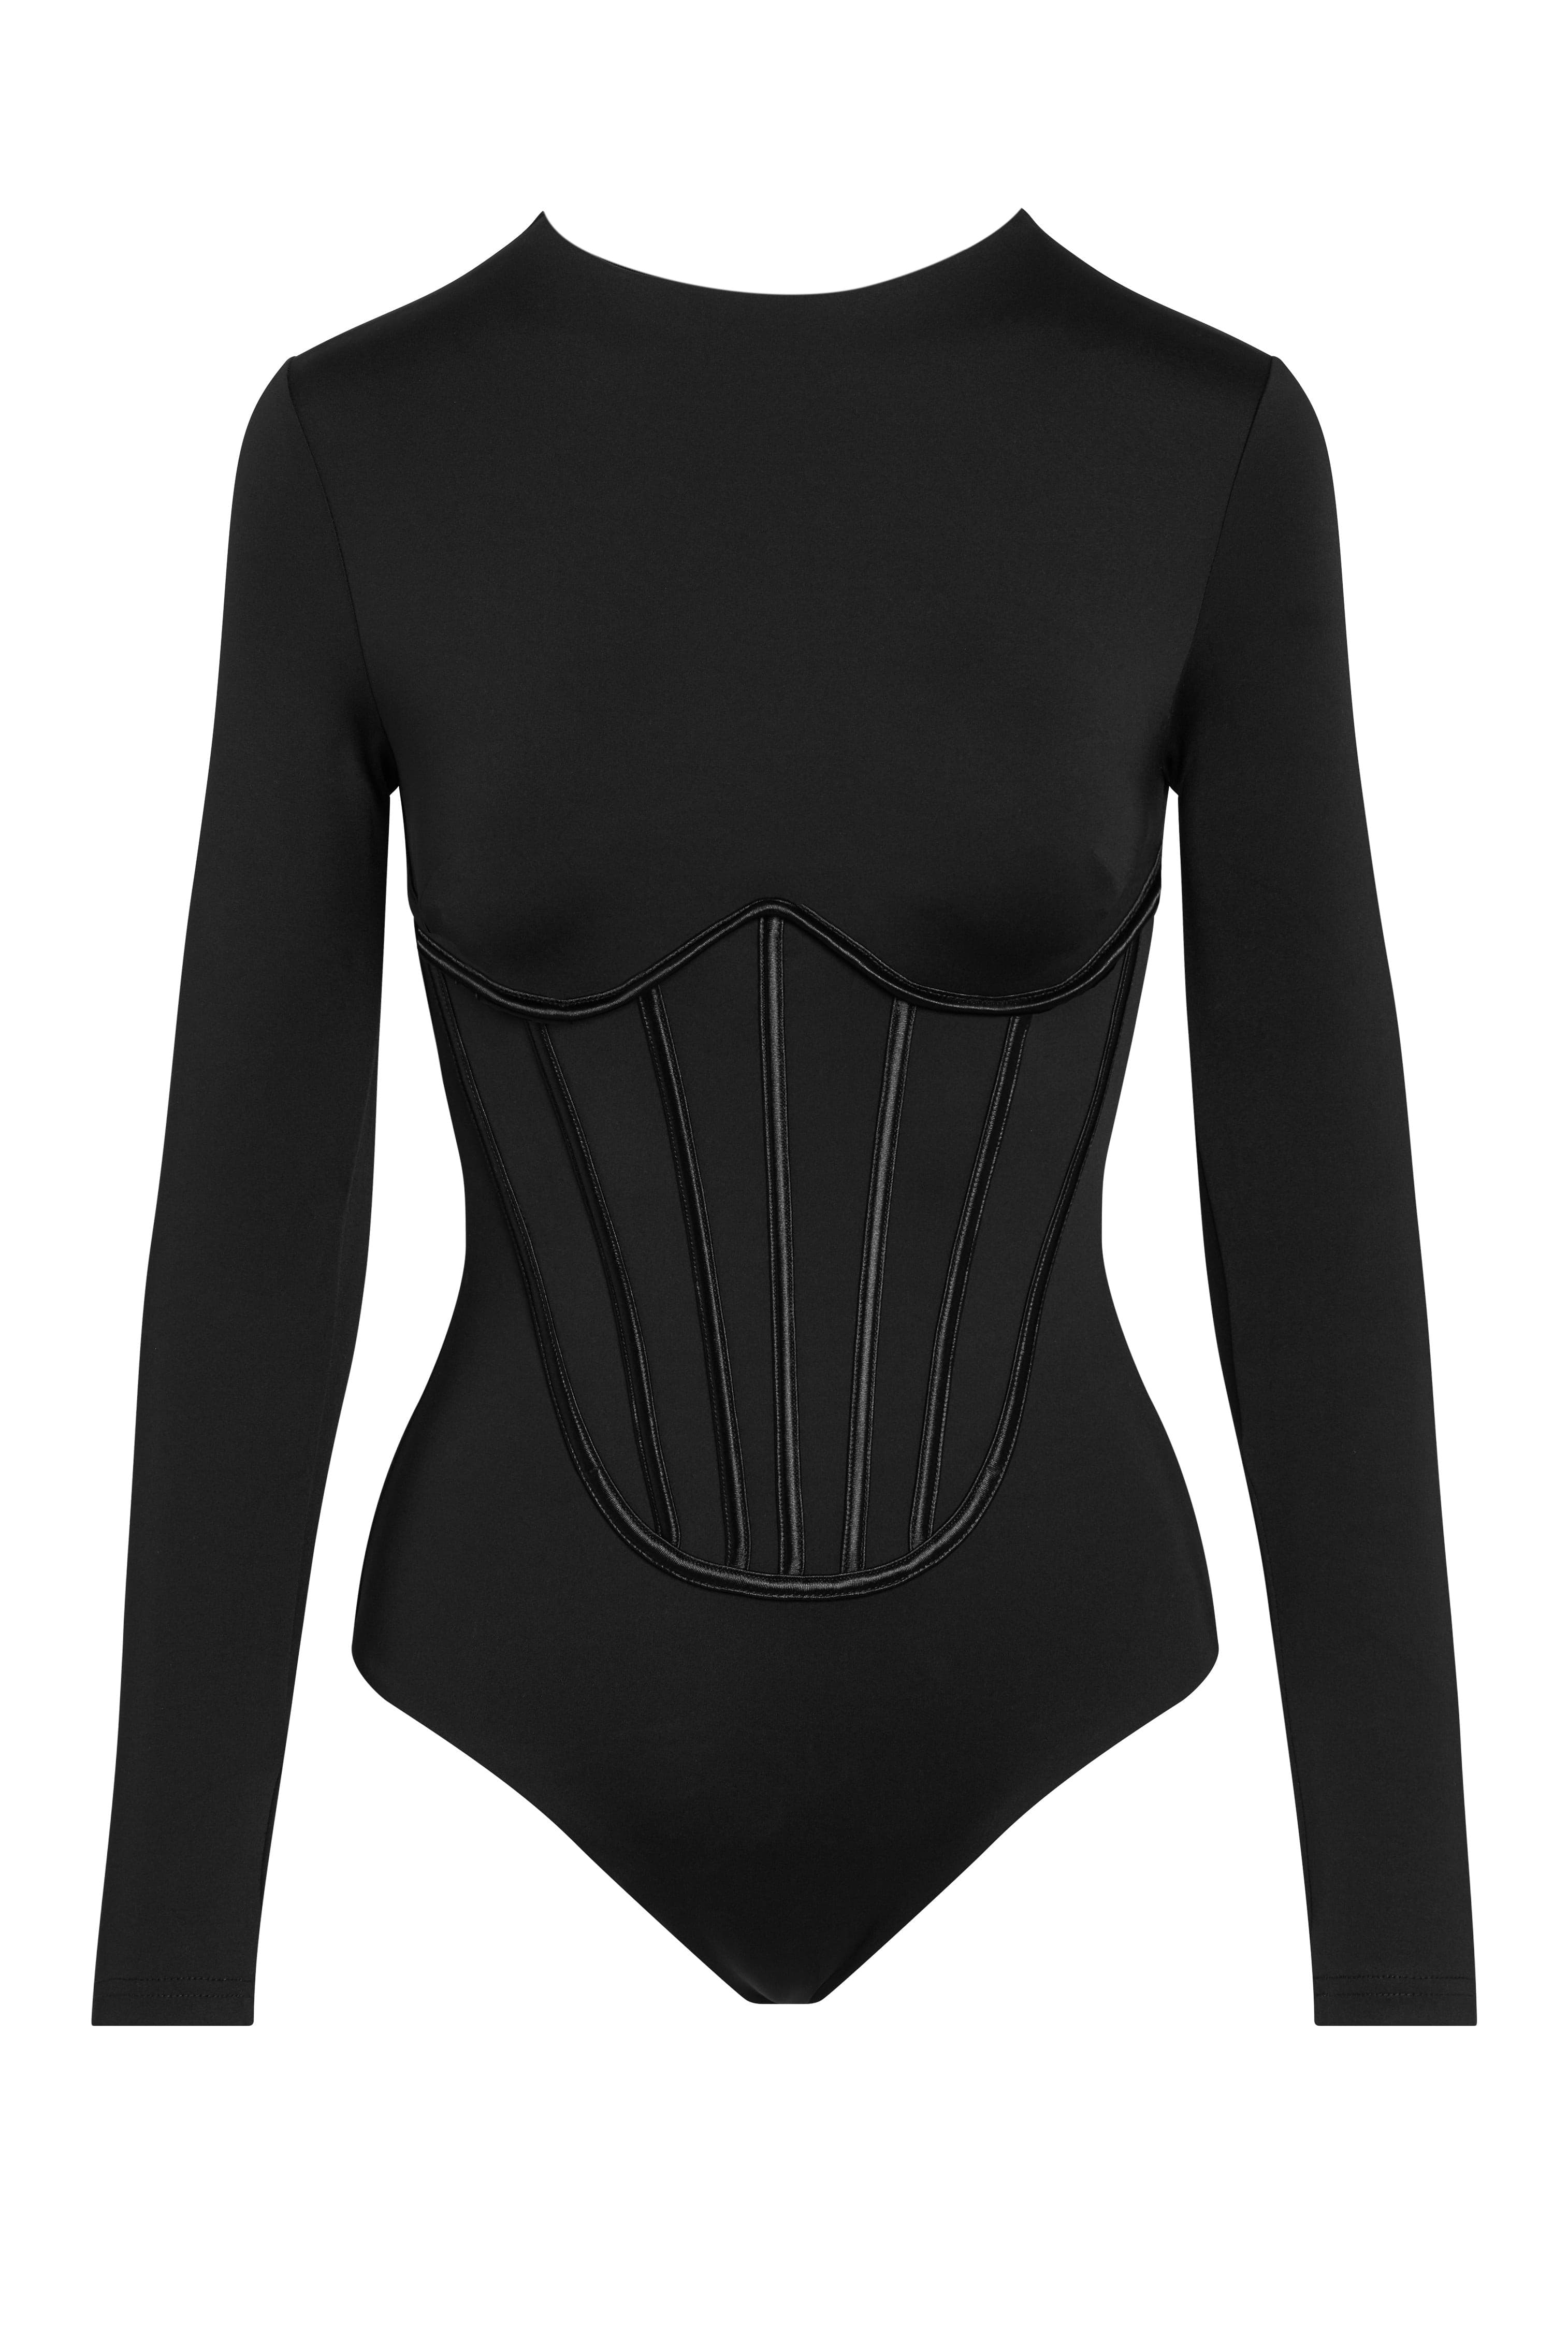 leau black lennox bustier corset bodysuit